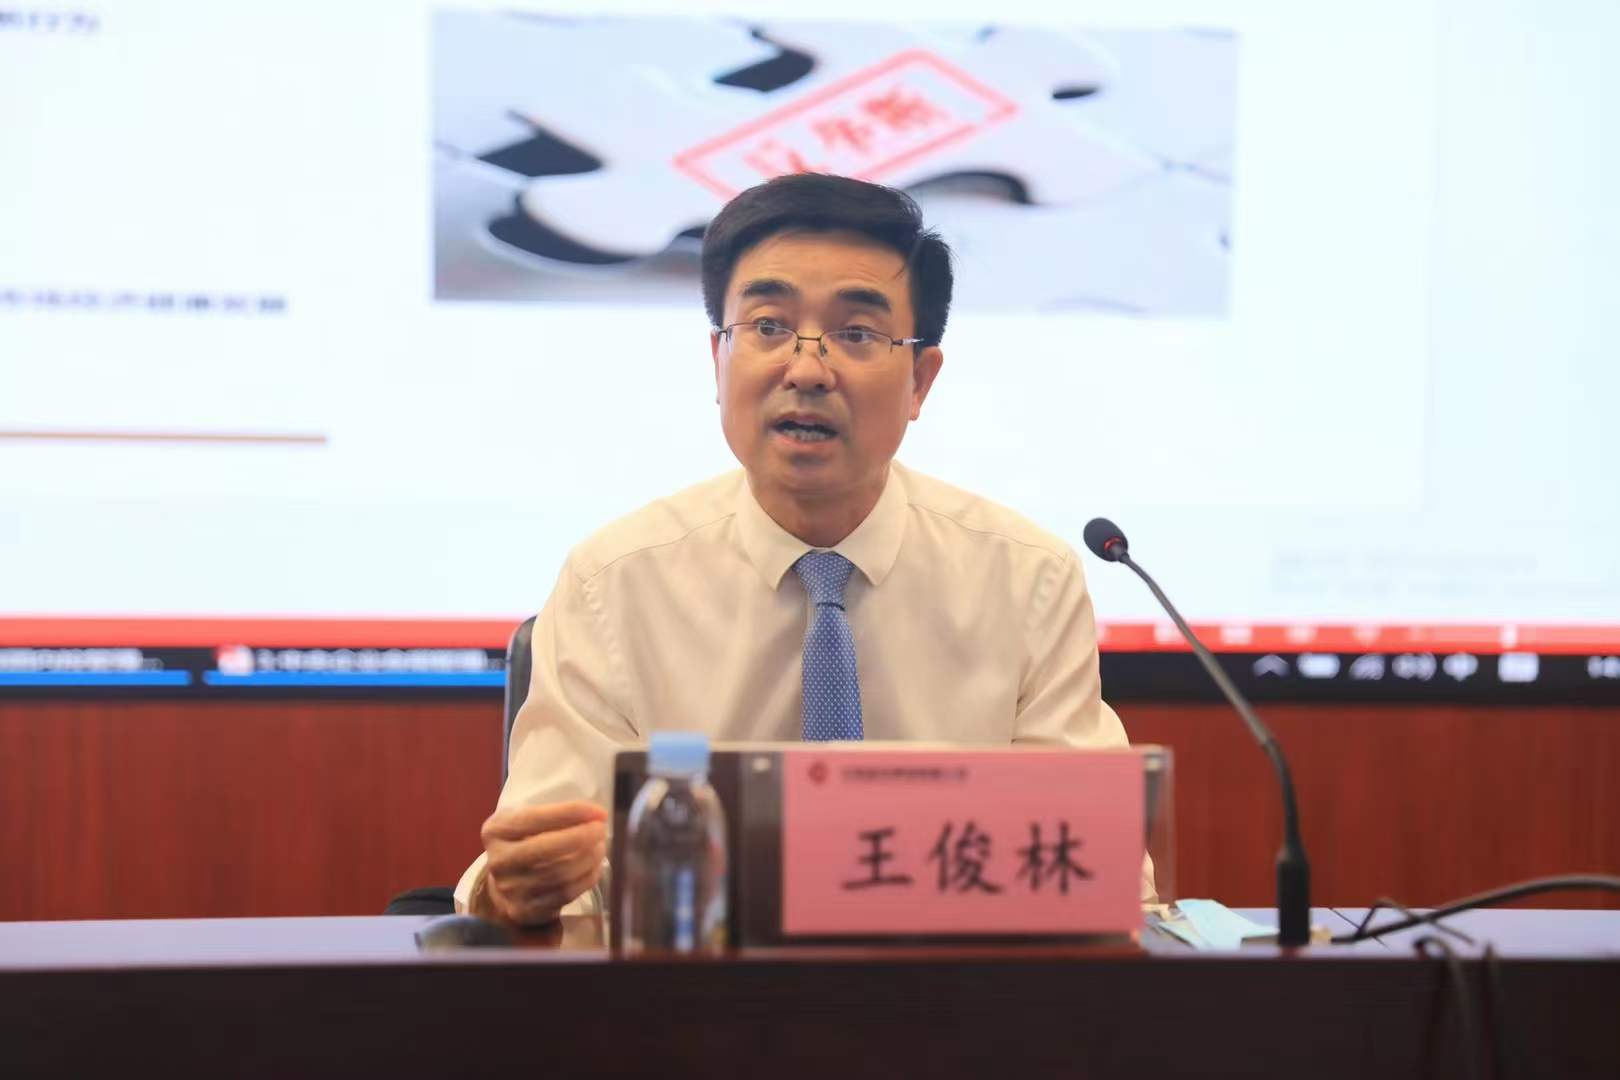 王俊林律师受邀为中盐集团作“反垄断法及其修订重点内容解读”专题讲座